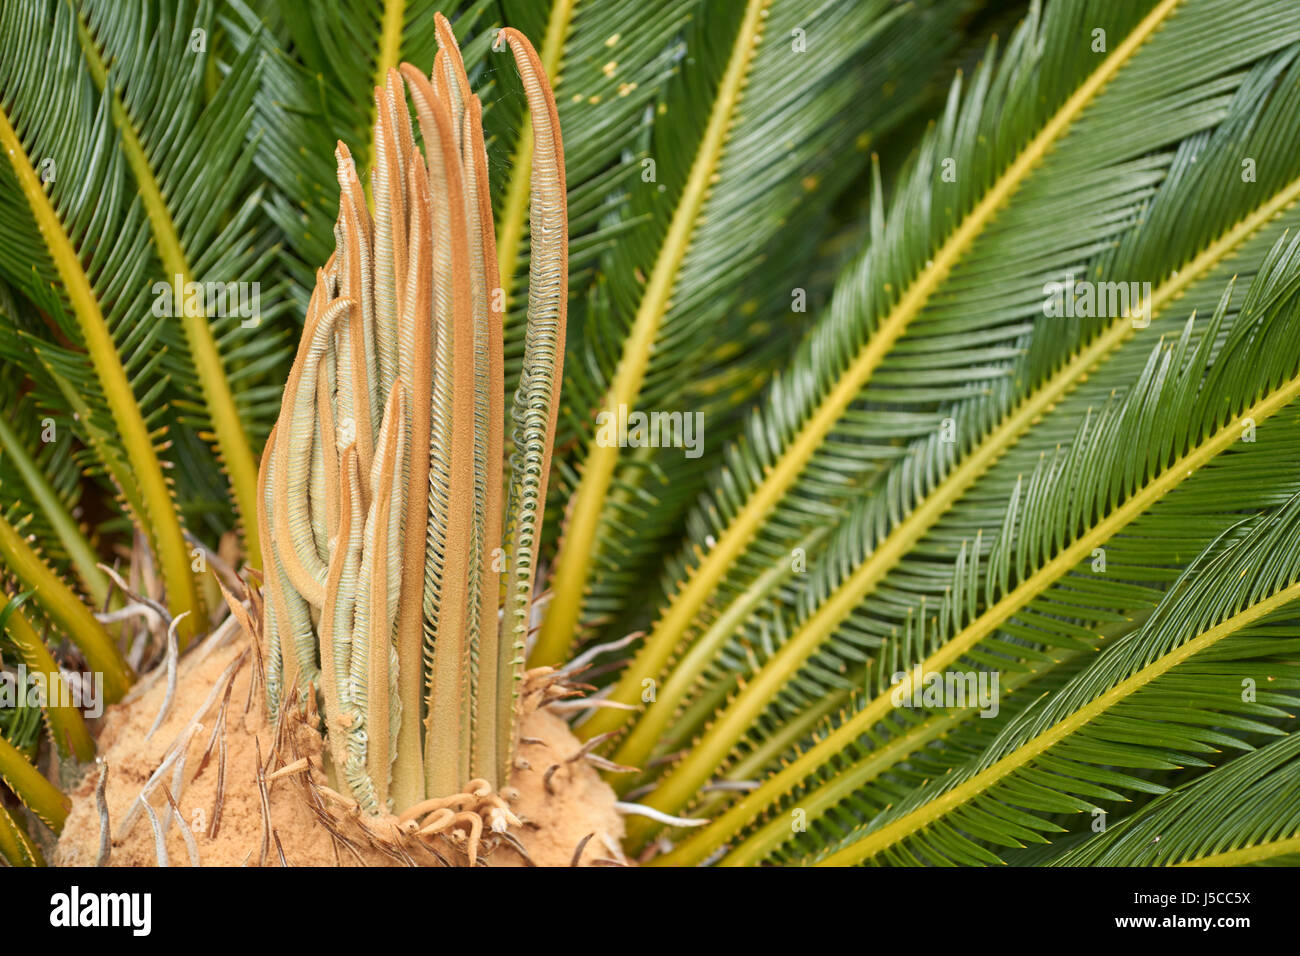 Primo piano di un .cycad (sago palm) impianto nella luce del sole Foto Stock